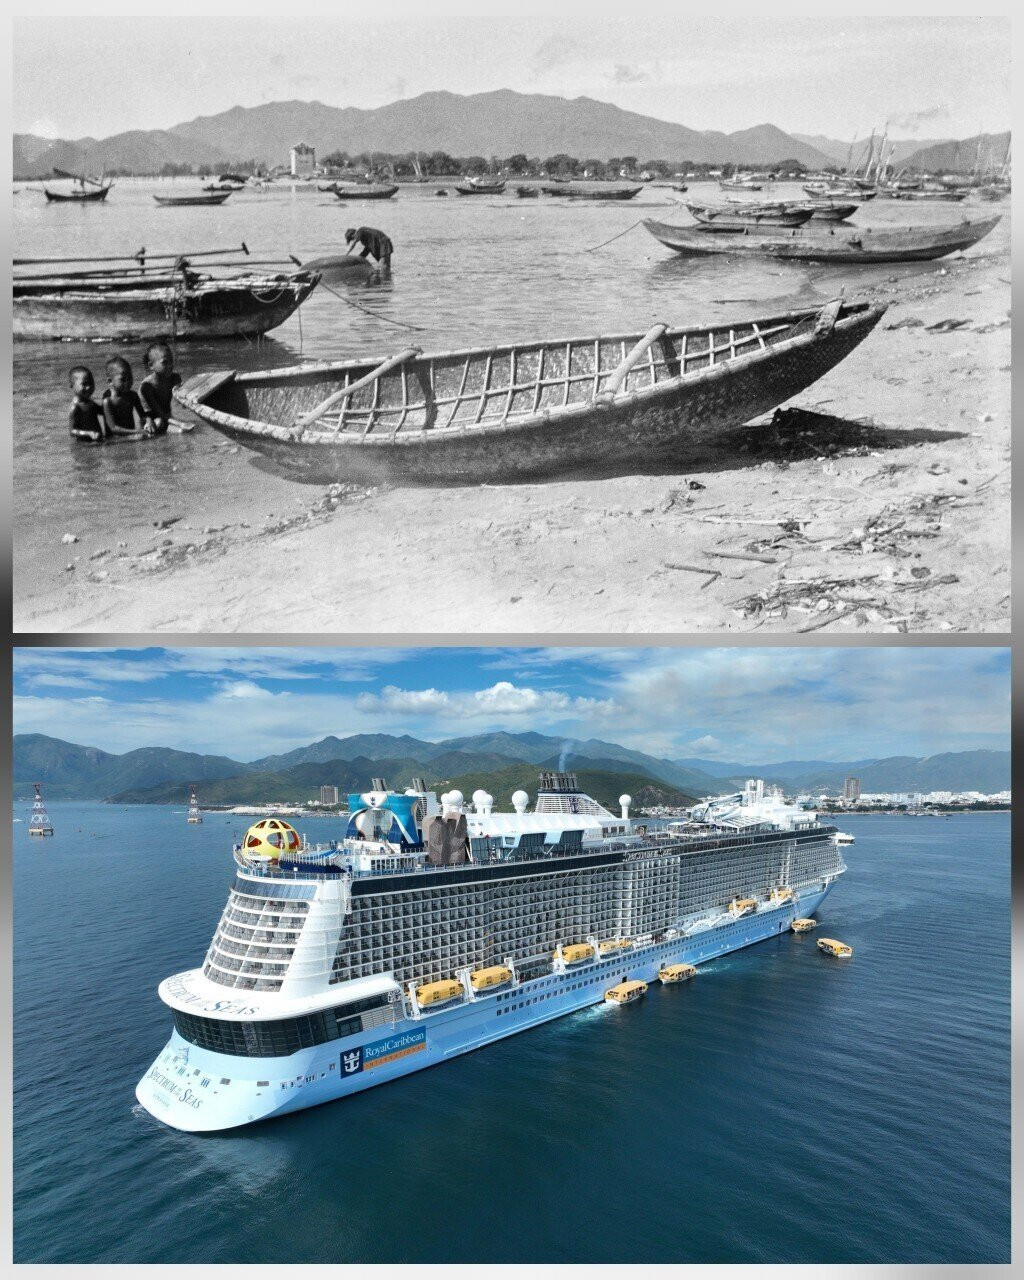 Thời kỳ 1920 - 1929 trên vịnh Nha Trang chỉ có những chiếc thuyền chài nhỏ bé (ảnh trên). Hiện nay, vịnh Nha Trang đón hàng chục du thuyền lớn của quốc tế ghé thăm (ảnh dưới)